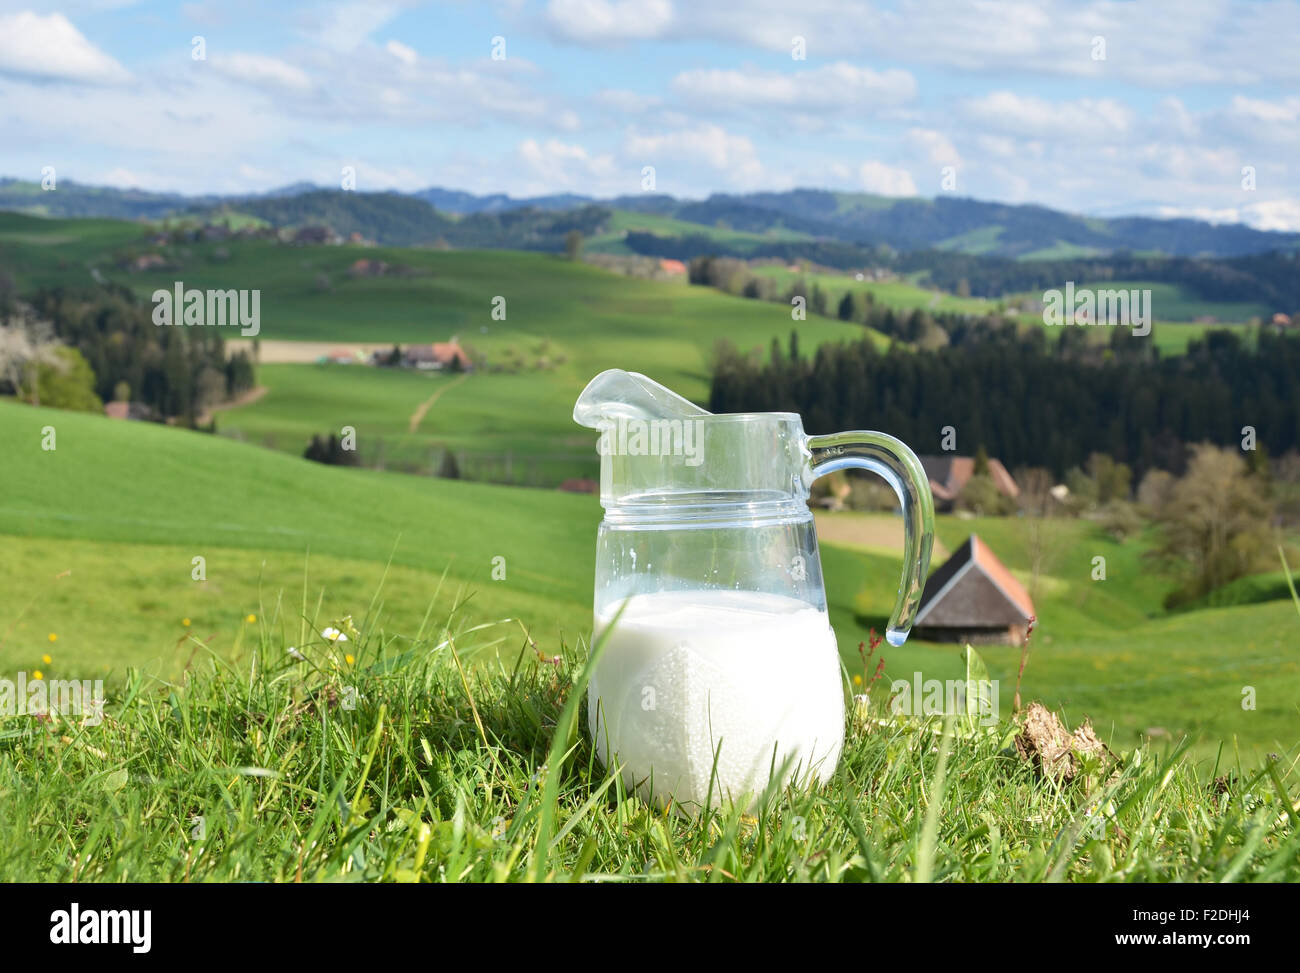 Pichet de lait. Région de l'Emmental, Suisse Banque D'Images